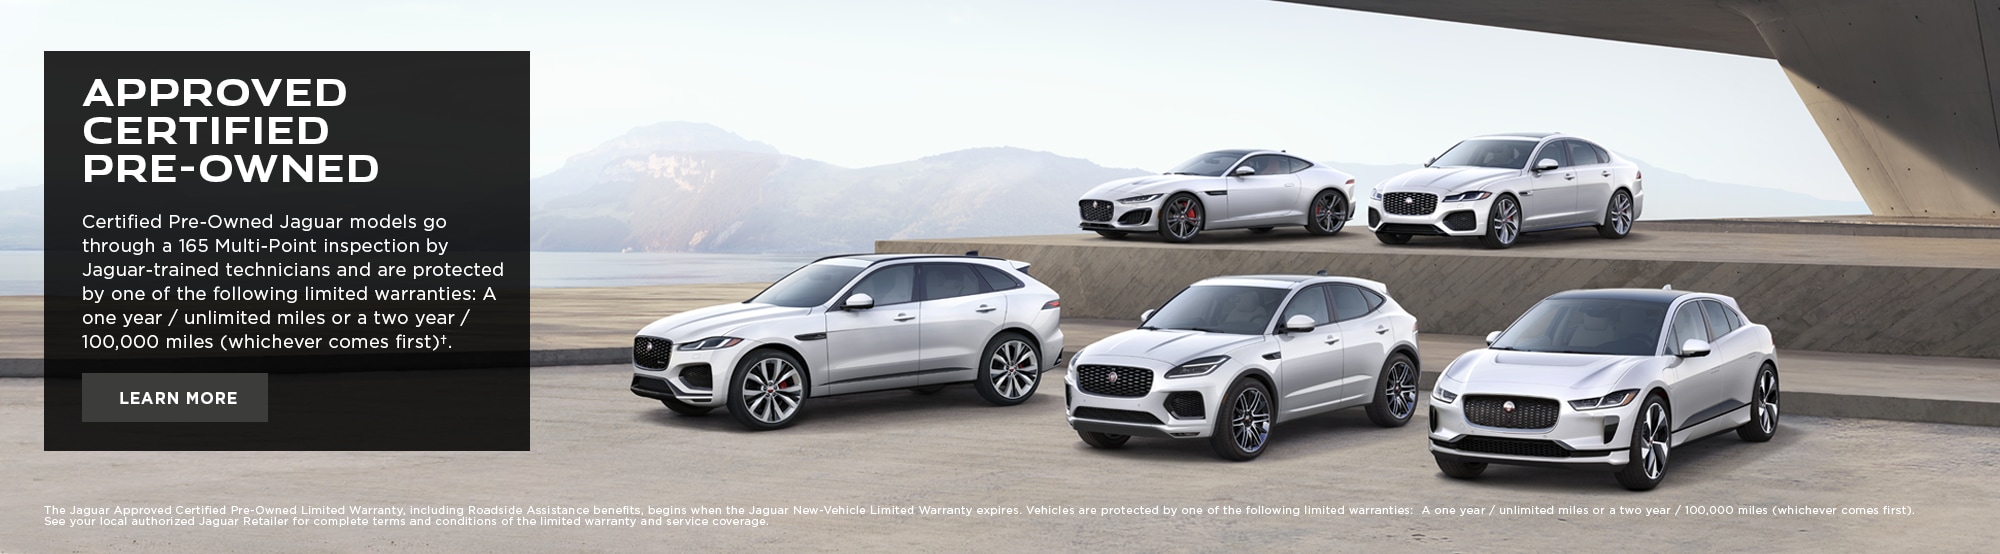 Đại lý Jaguar ở Santa Barbara là điểm đến lý tưởng cho những người yêu thích chất lượng và đẳng cấp. Với một danh mục các mẫu xe hạng sang đẳng cấp và chất lượng cao, bạn không thể bỏ qua cơ hội khám phá chiếc xe ưa thích của mình tại đại lý này.